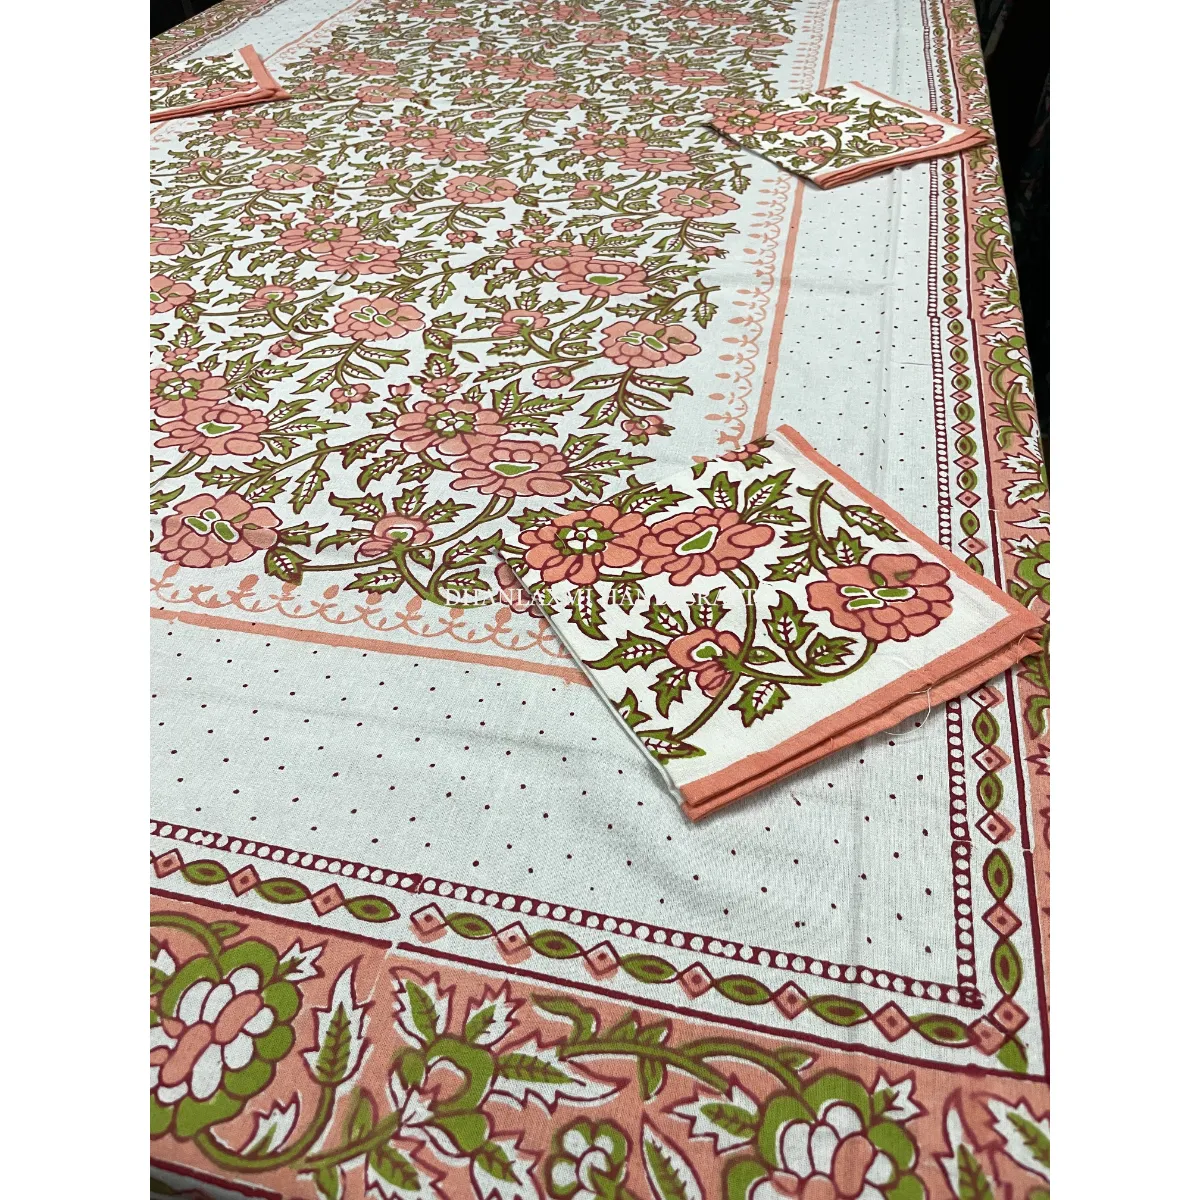 Mantel de algodón para mesa, cubierta de lino con seis servilletas, diseño tradicional, estampado a mano, decoración de lujo para boda y hogar